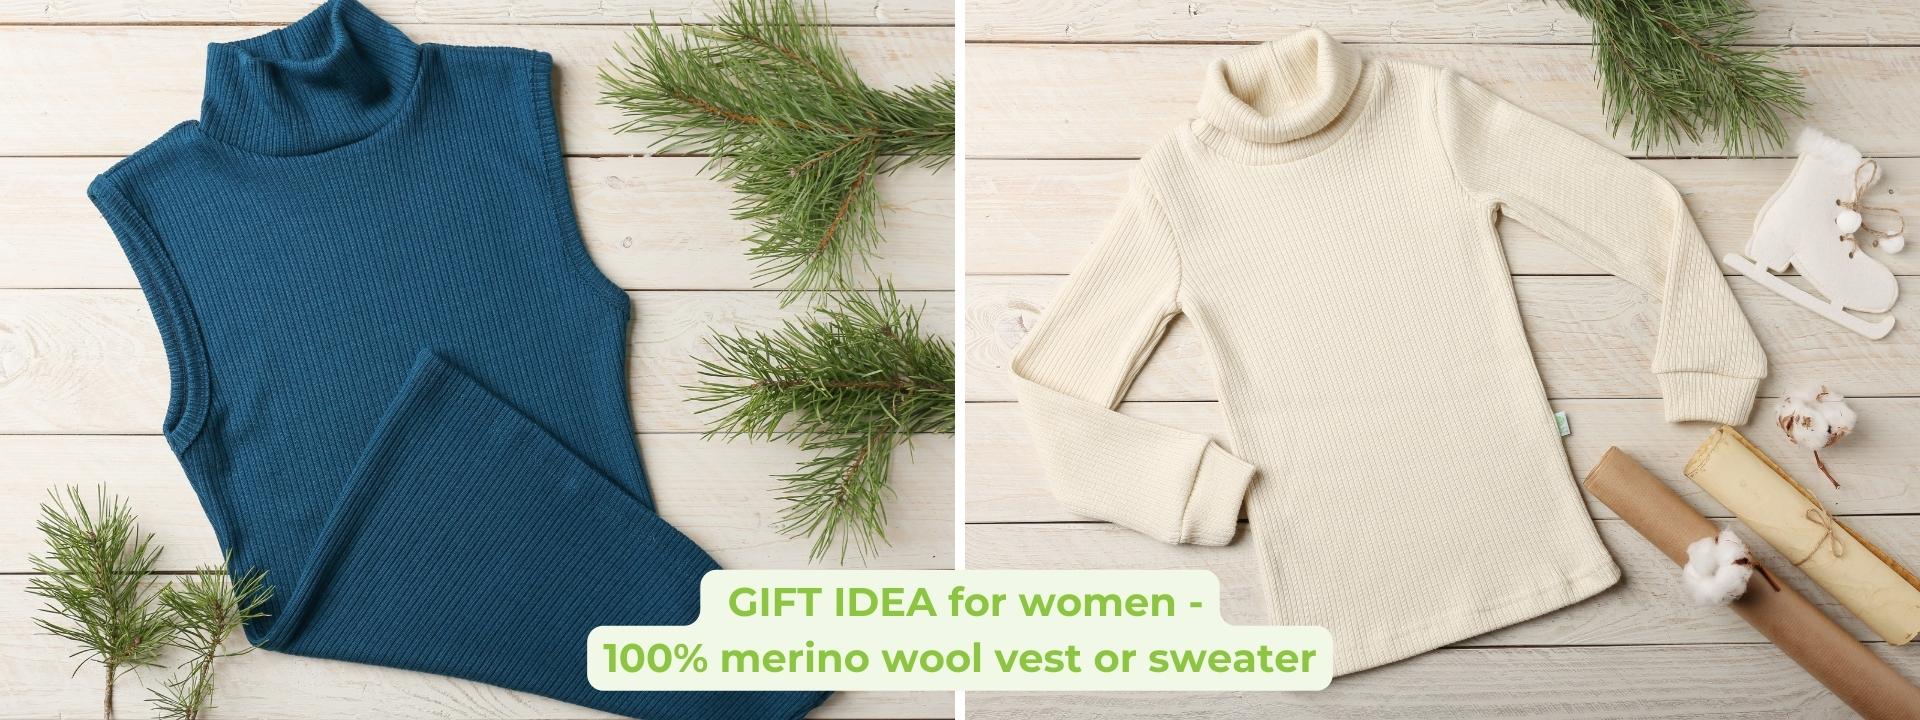 Christmas gift idea for women